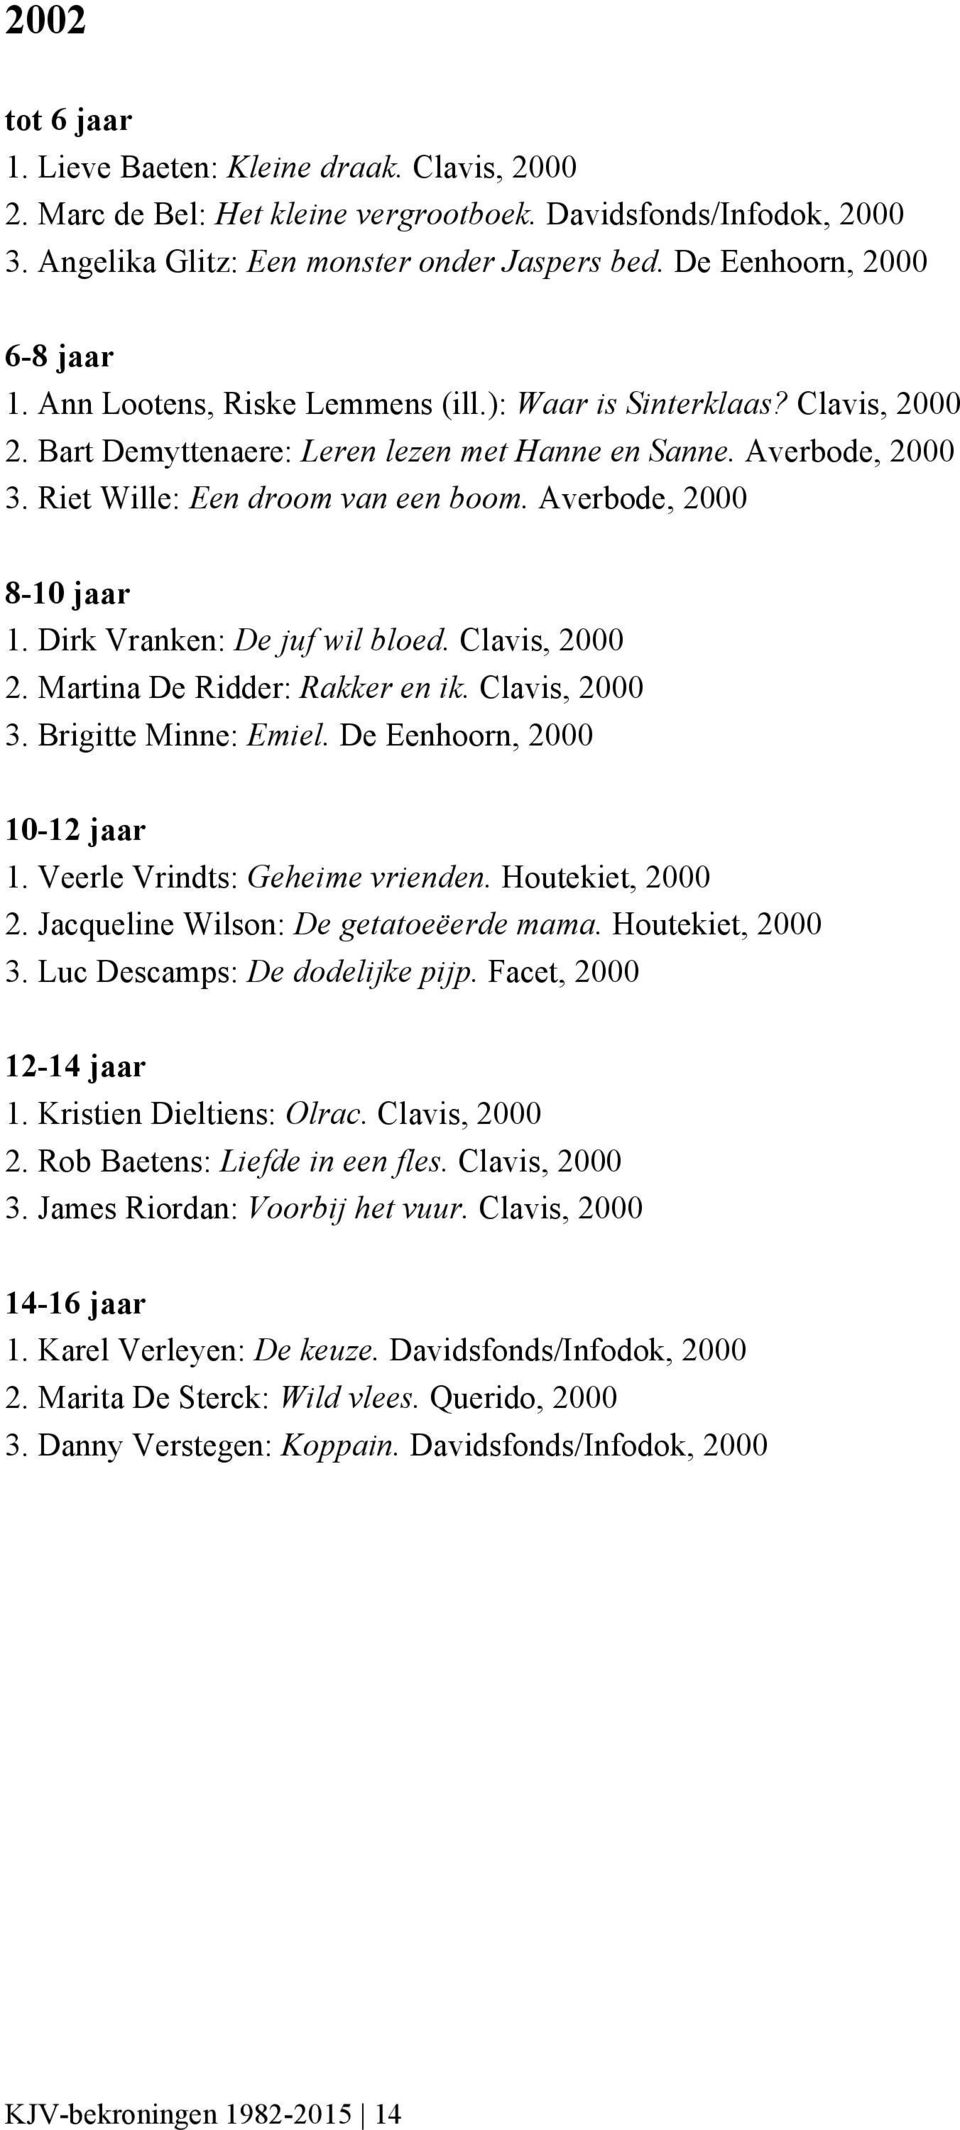 Dirk Vranken: De juf wil bloed. Clavis, 2000 2. Martina De Ridder: Rakker en ik. Clavis, 2000 3. Brigitte Minne: Emiel. De Eenhoorn, 2000 1. Veerle Vrindts: Geheime vrienden. Houtekiet, 2000 2.